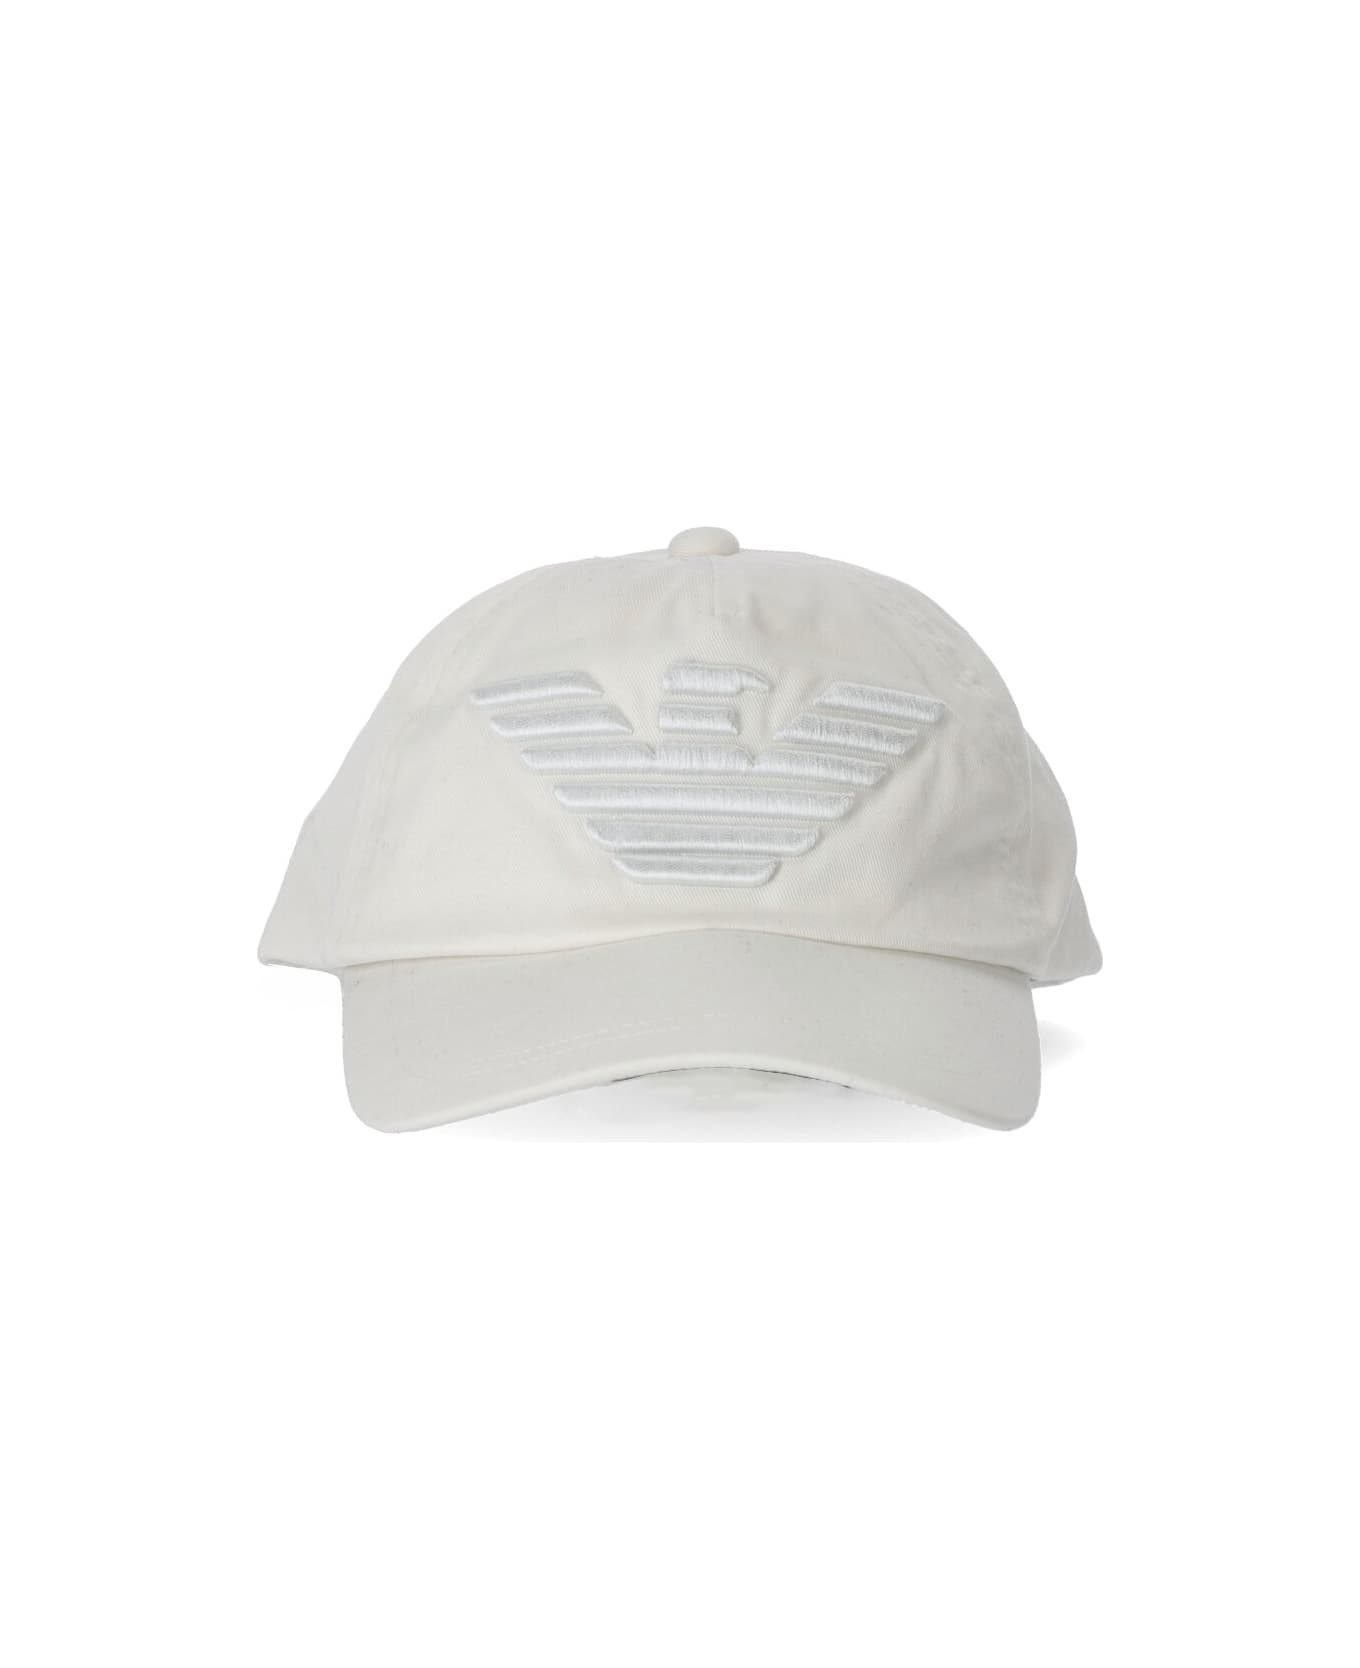 Emporio Armani Eagle White Baseball Cap - White